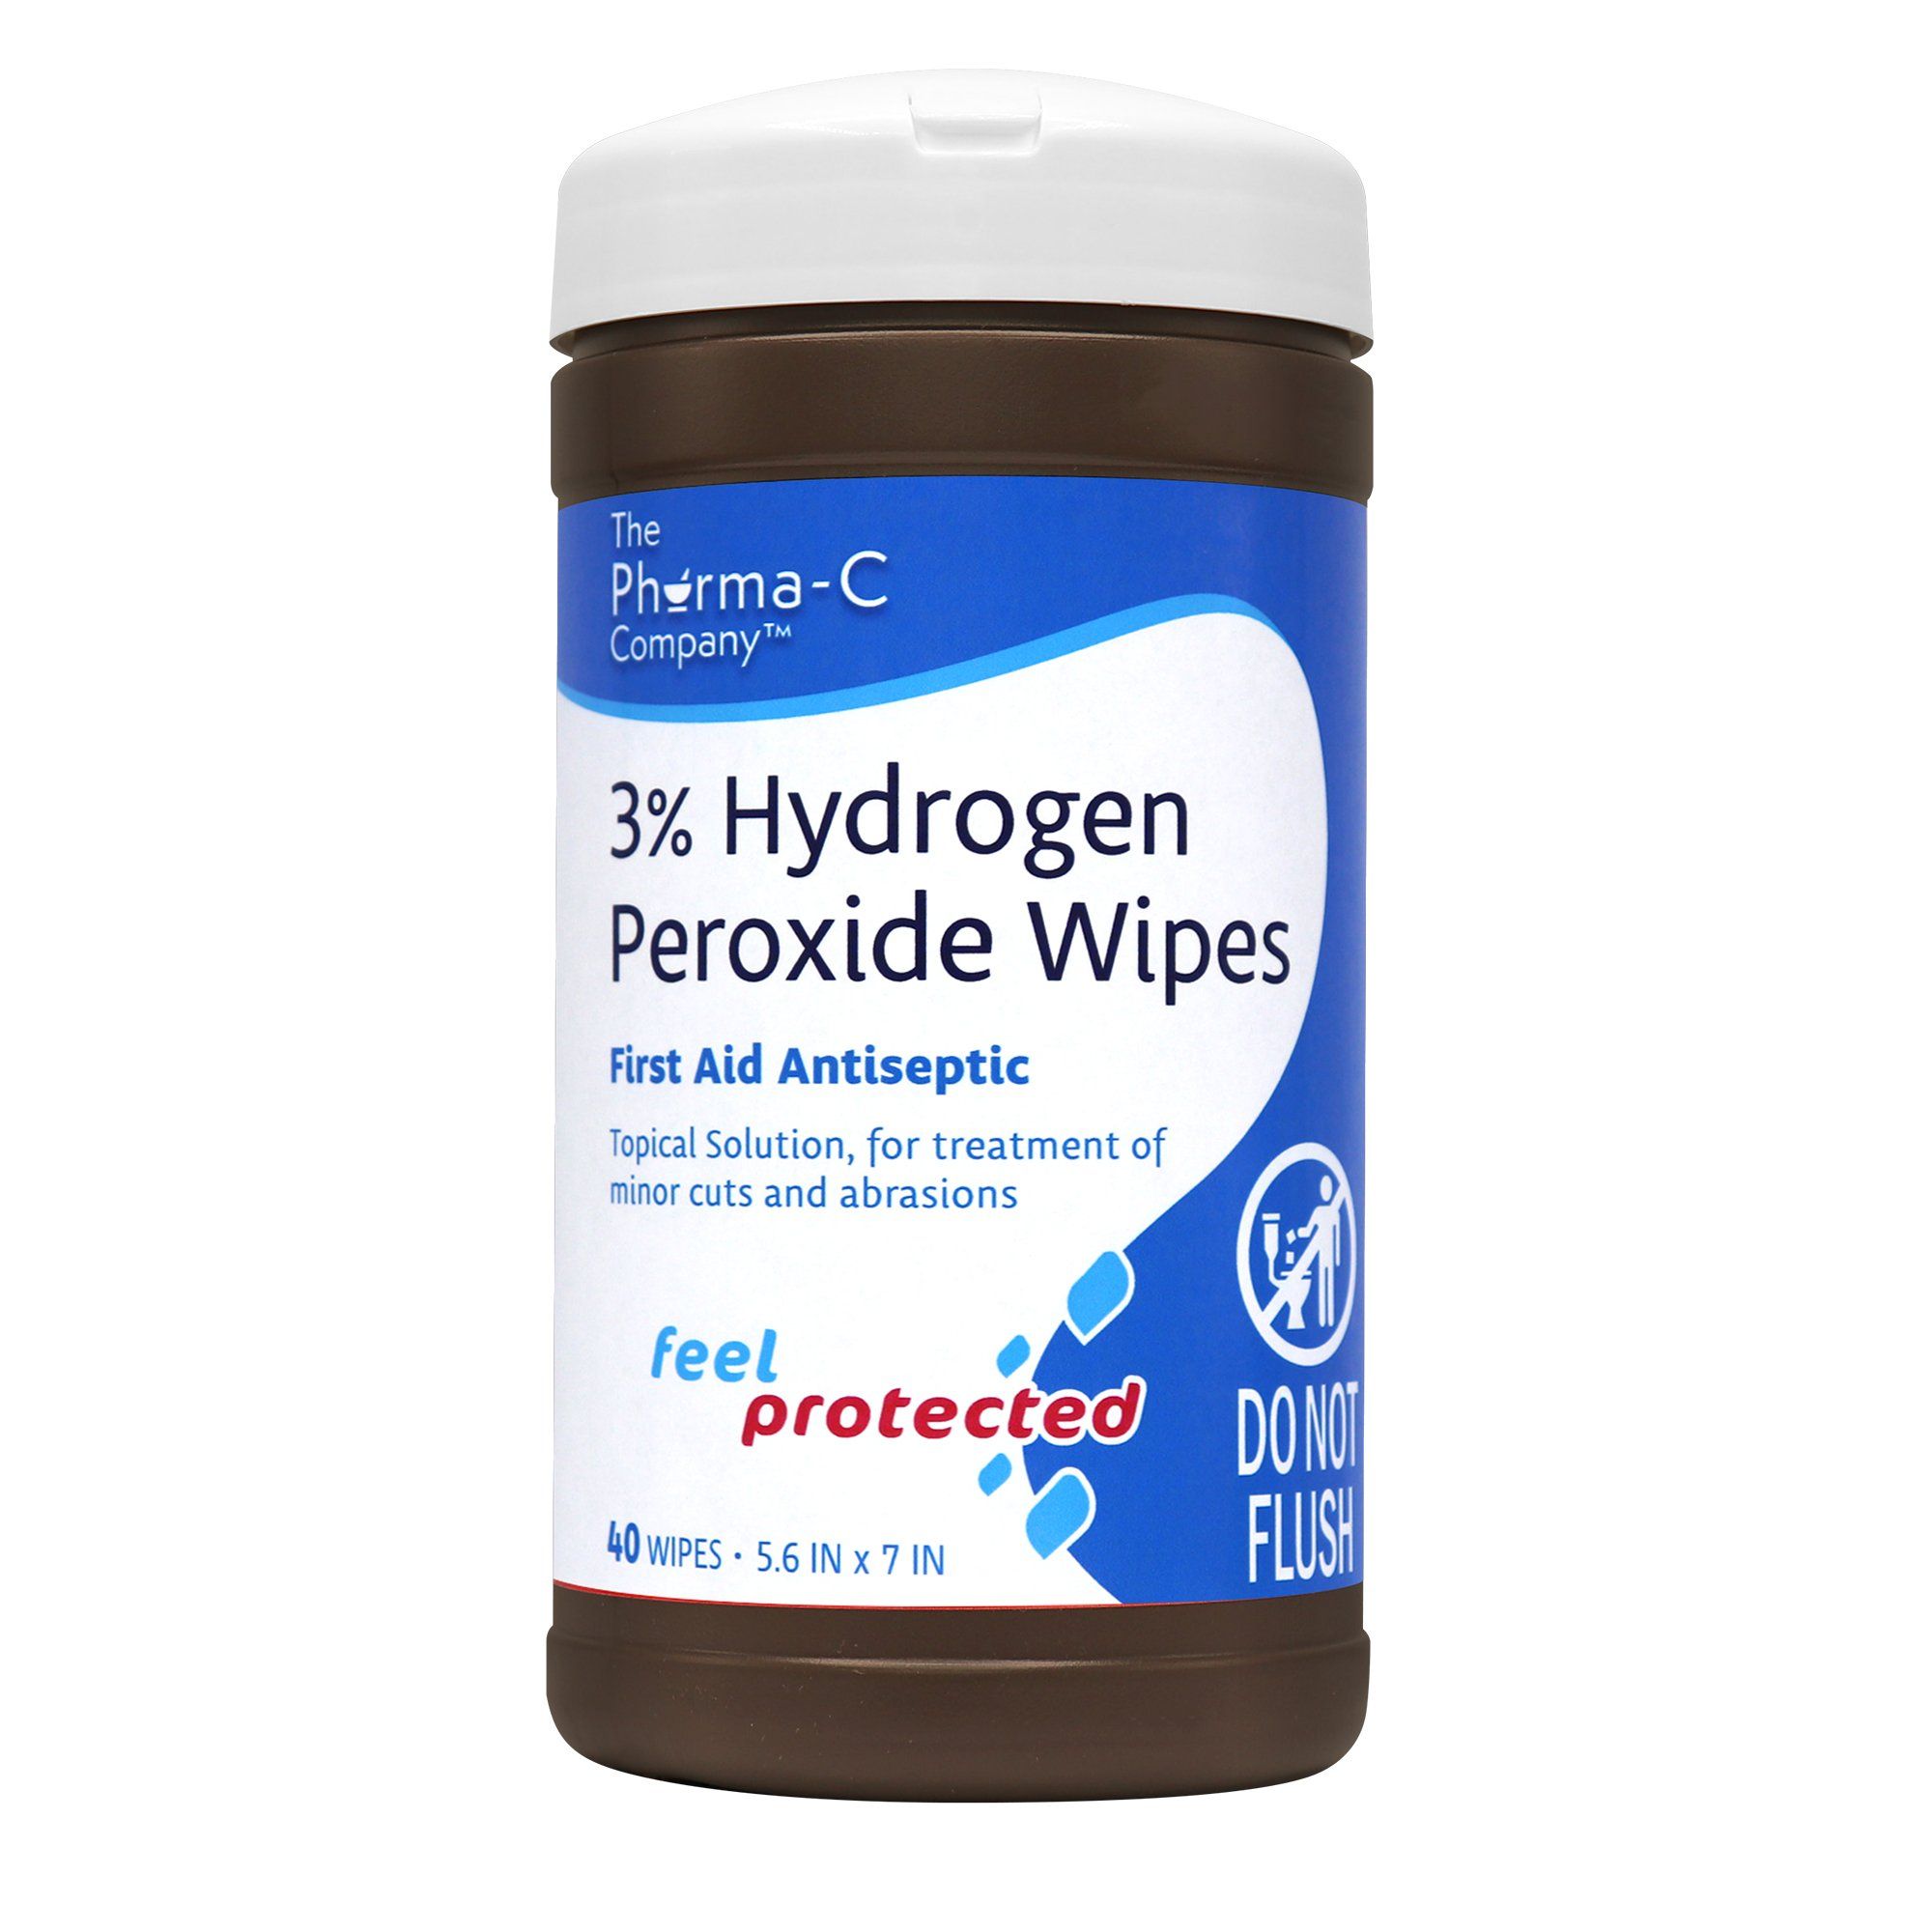 Pre-Moistened Hydrogen Peroxide Wipes - 40 wipes